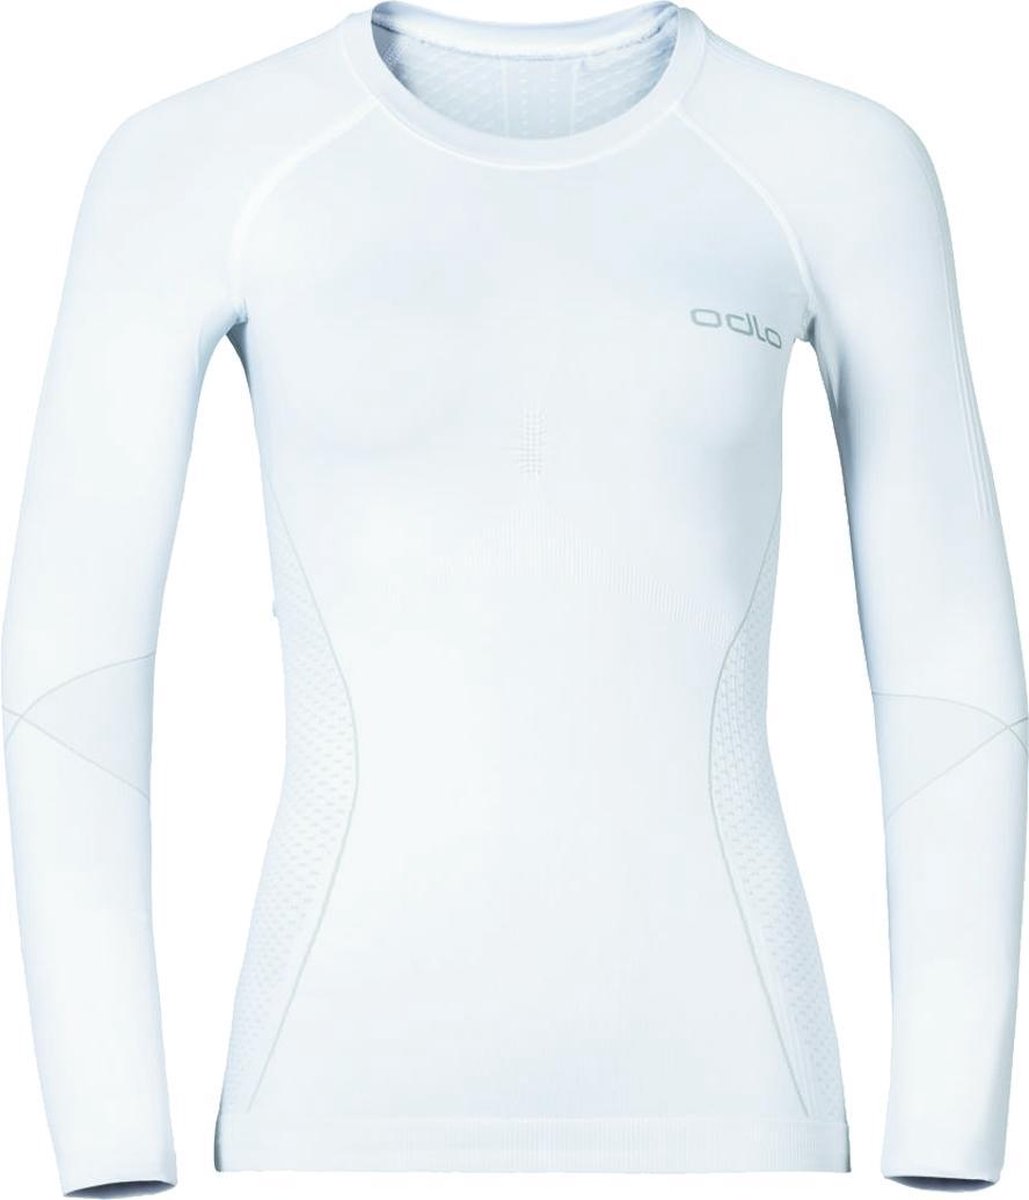 Odlo - Performance Warm Sports Underwear Longsleeve - Wit Ondershirt Dames - L - Wit